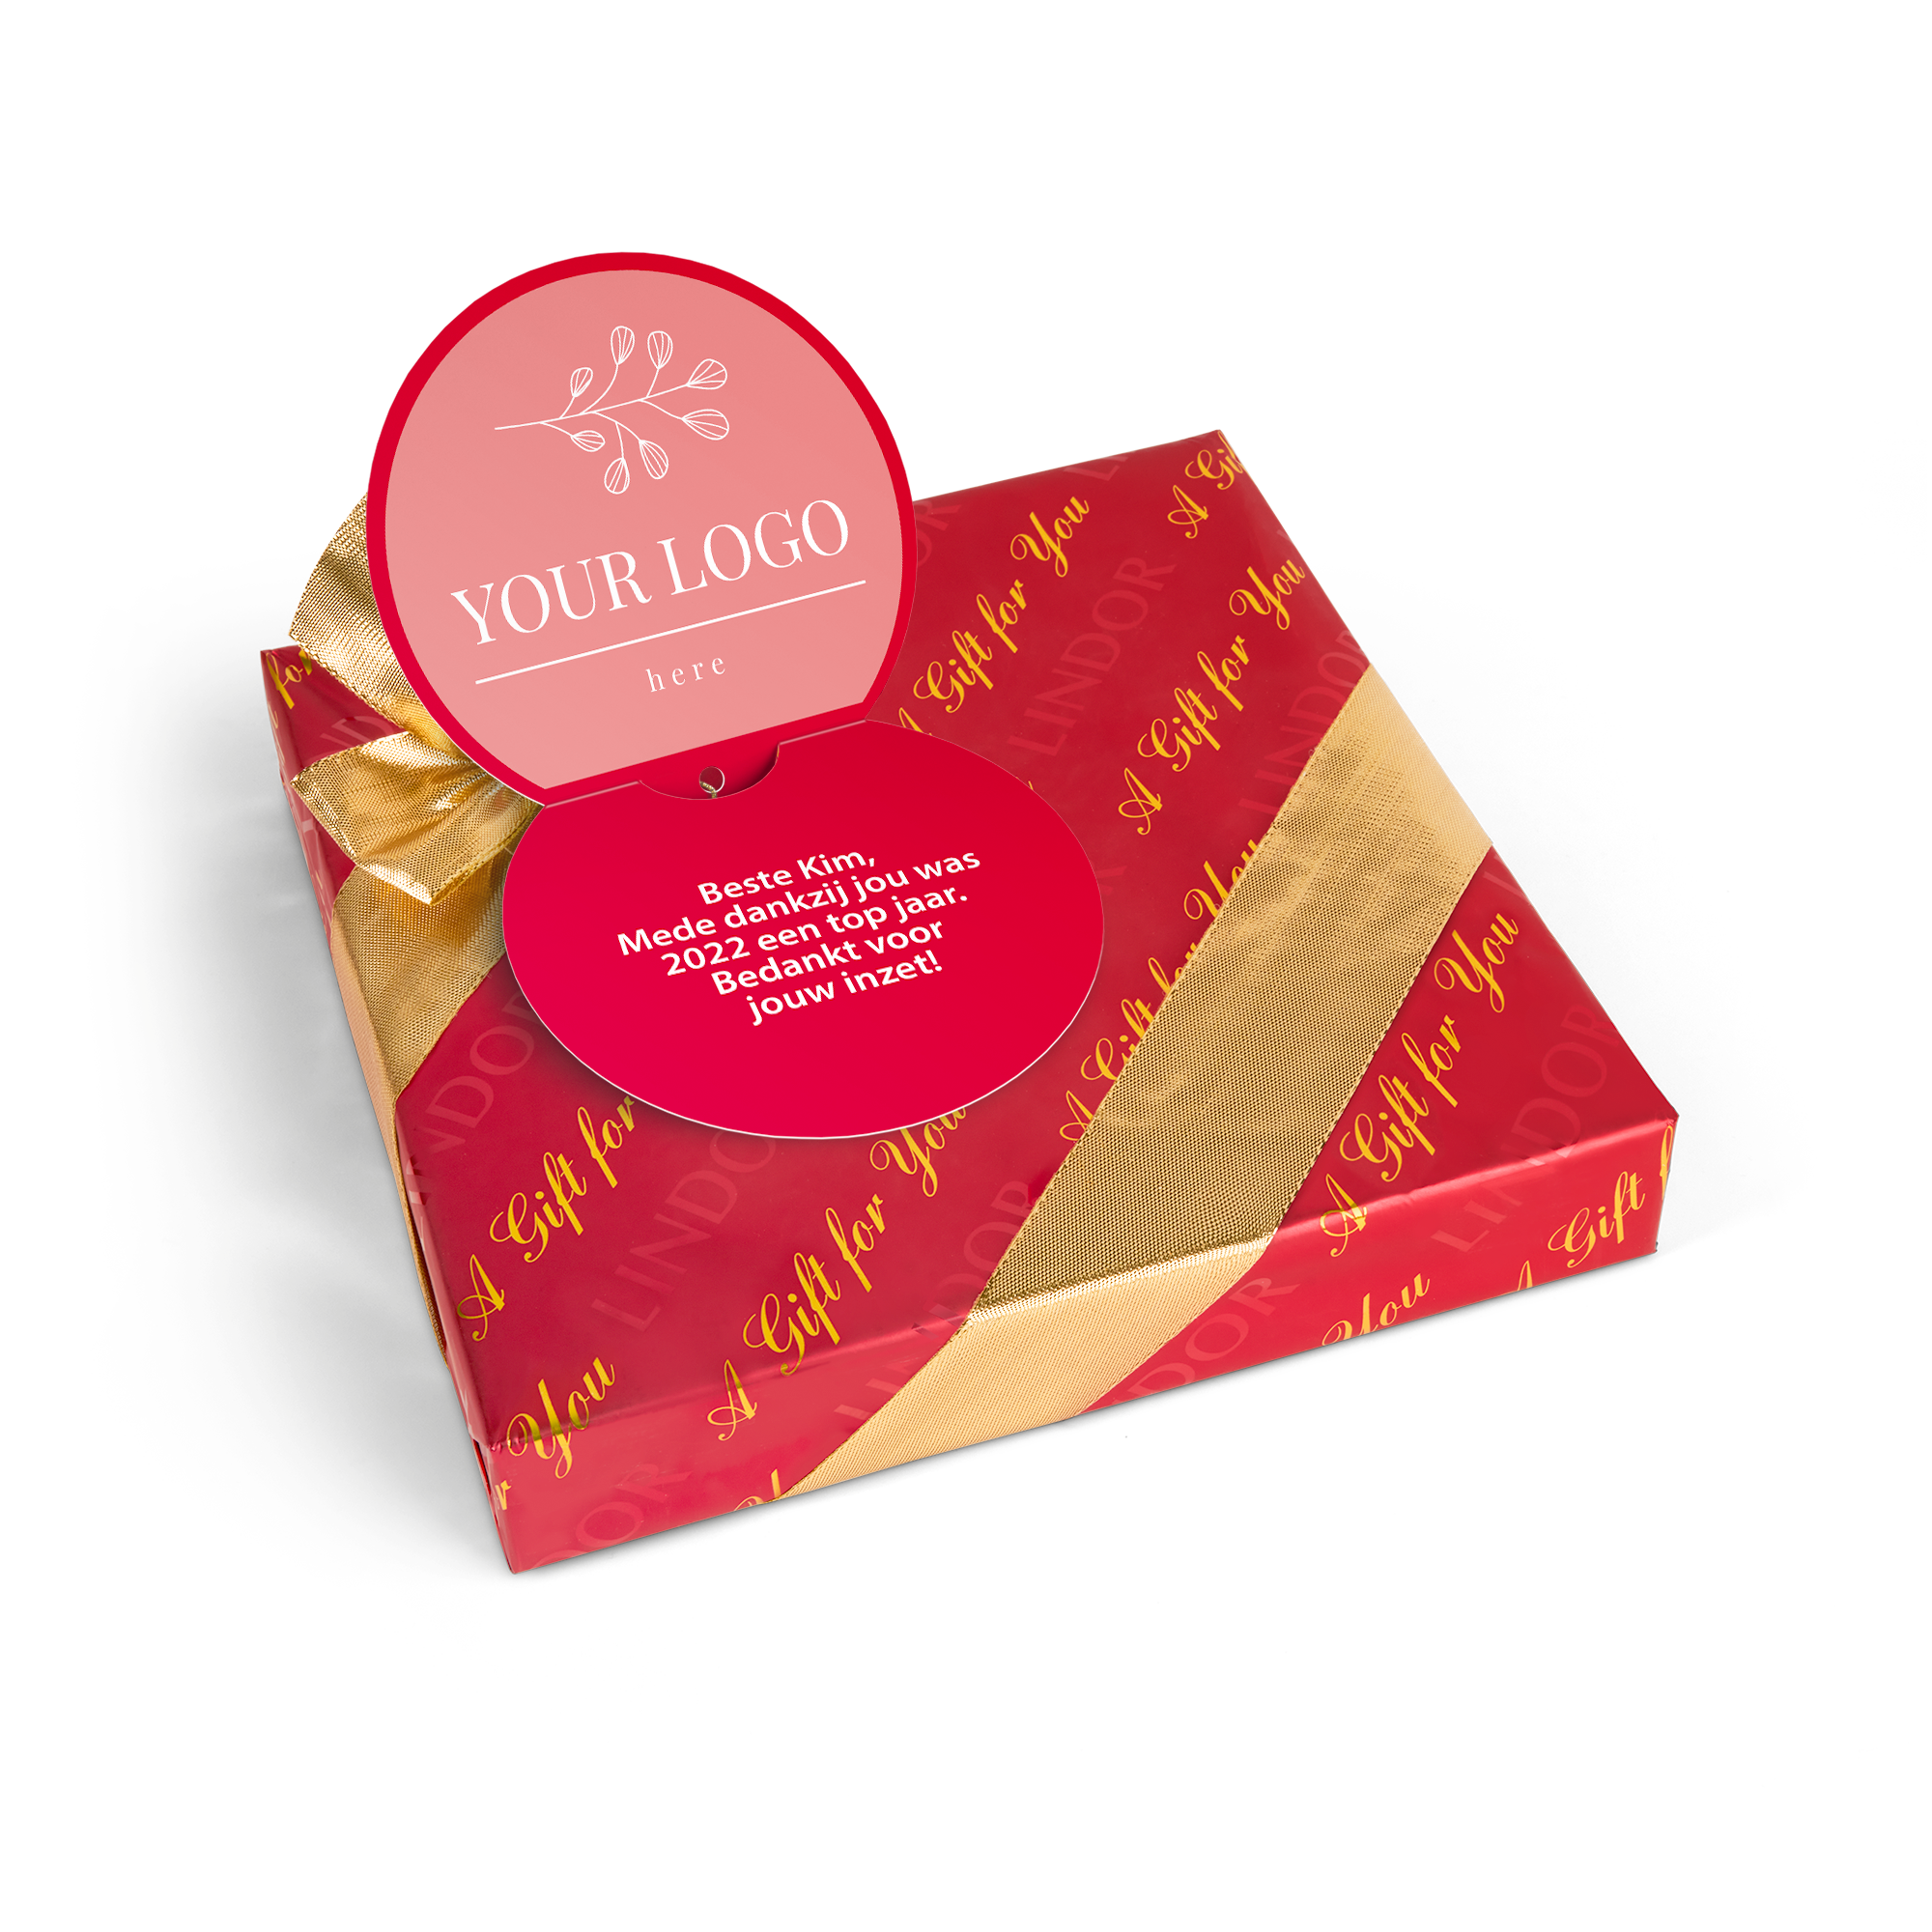 Caixa de oferta de chocolate Lindt com cartão